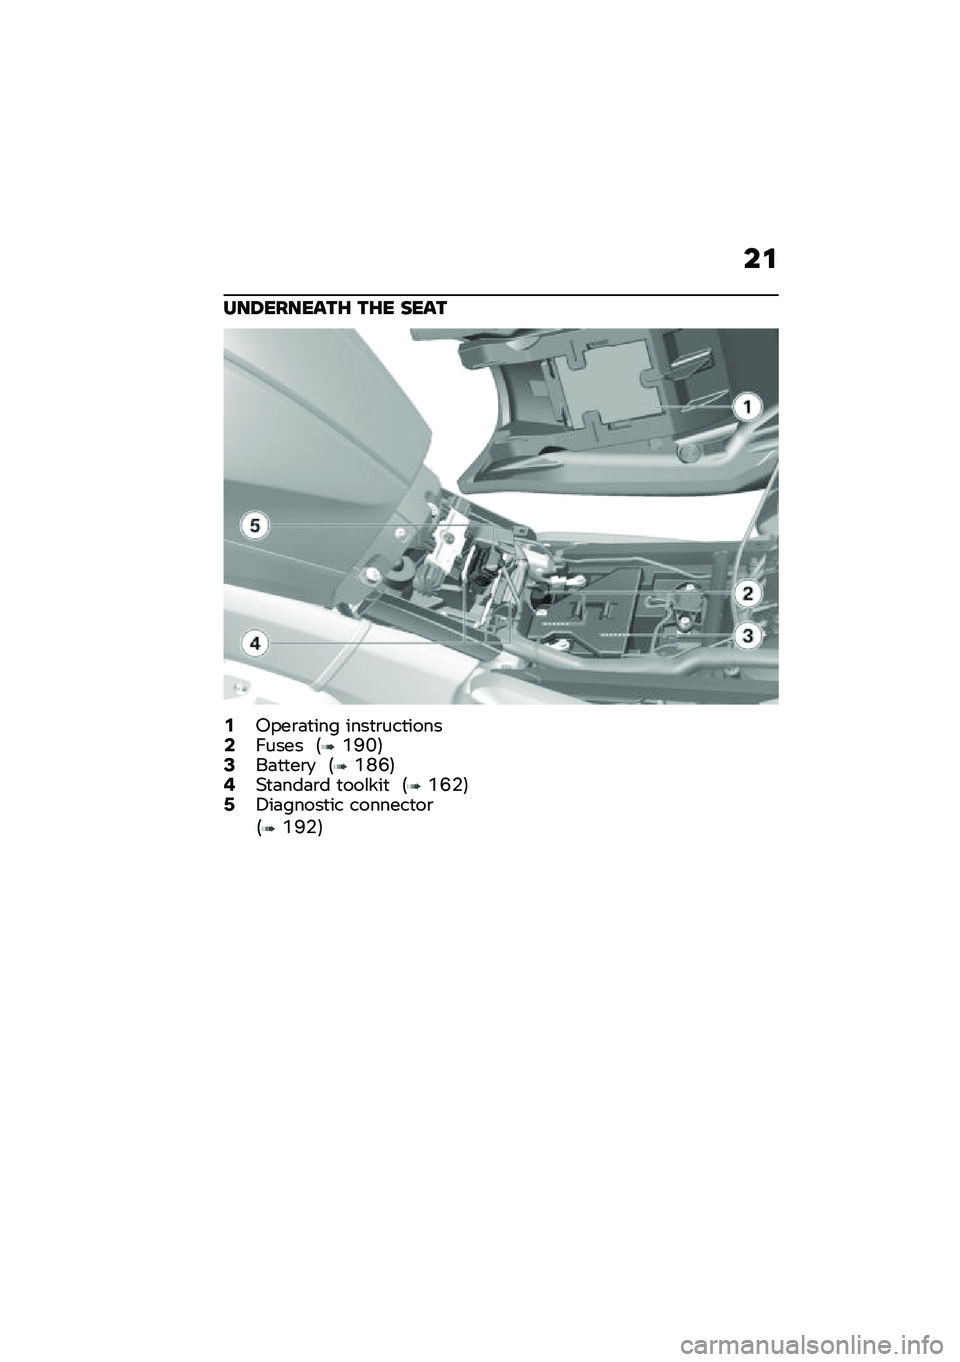 BMW MOTORRAD K 1600 B 2020  Riders Manual (in English) ��\f
���6������\b�F �\b�F� ����\b
�,�1���\b�	�
��� ����
�\b���
�����.����� �6�O�B�K�7�0��	�
�
��\b�
 �6�O�M�I�7�2�)�
�	���	�\b� �
���\f���
 �6�O�I�%�7�4�5��	�